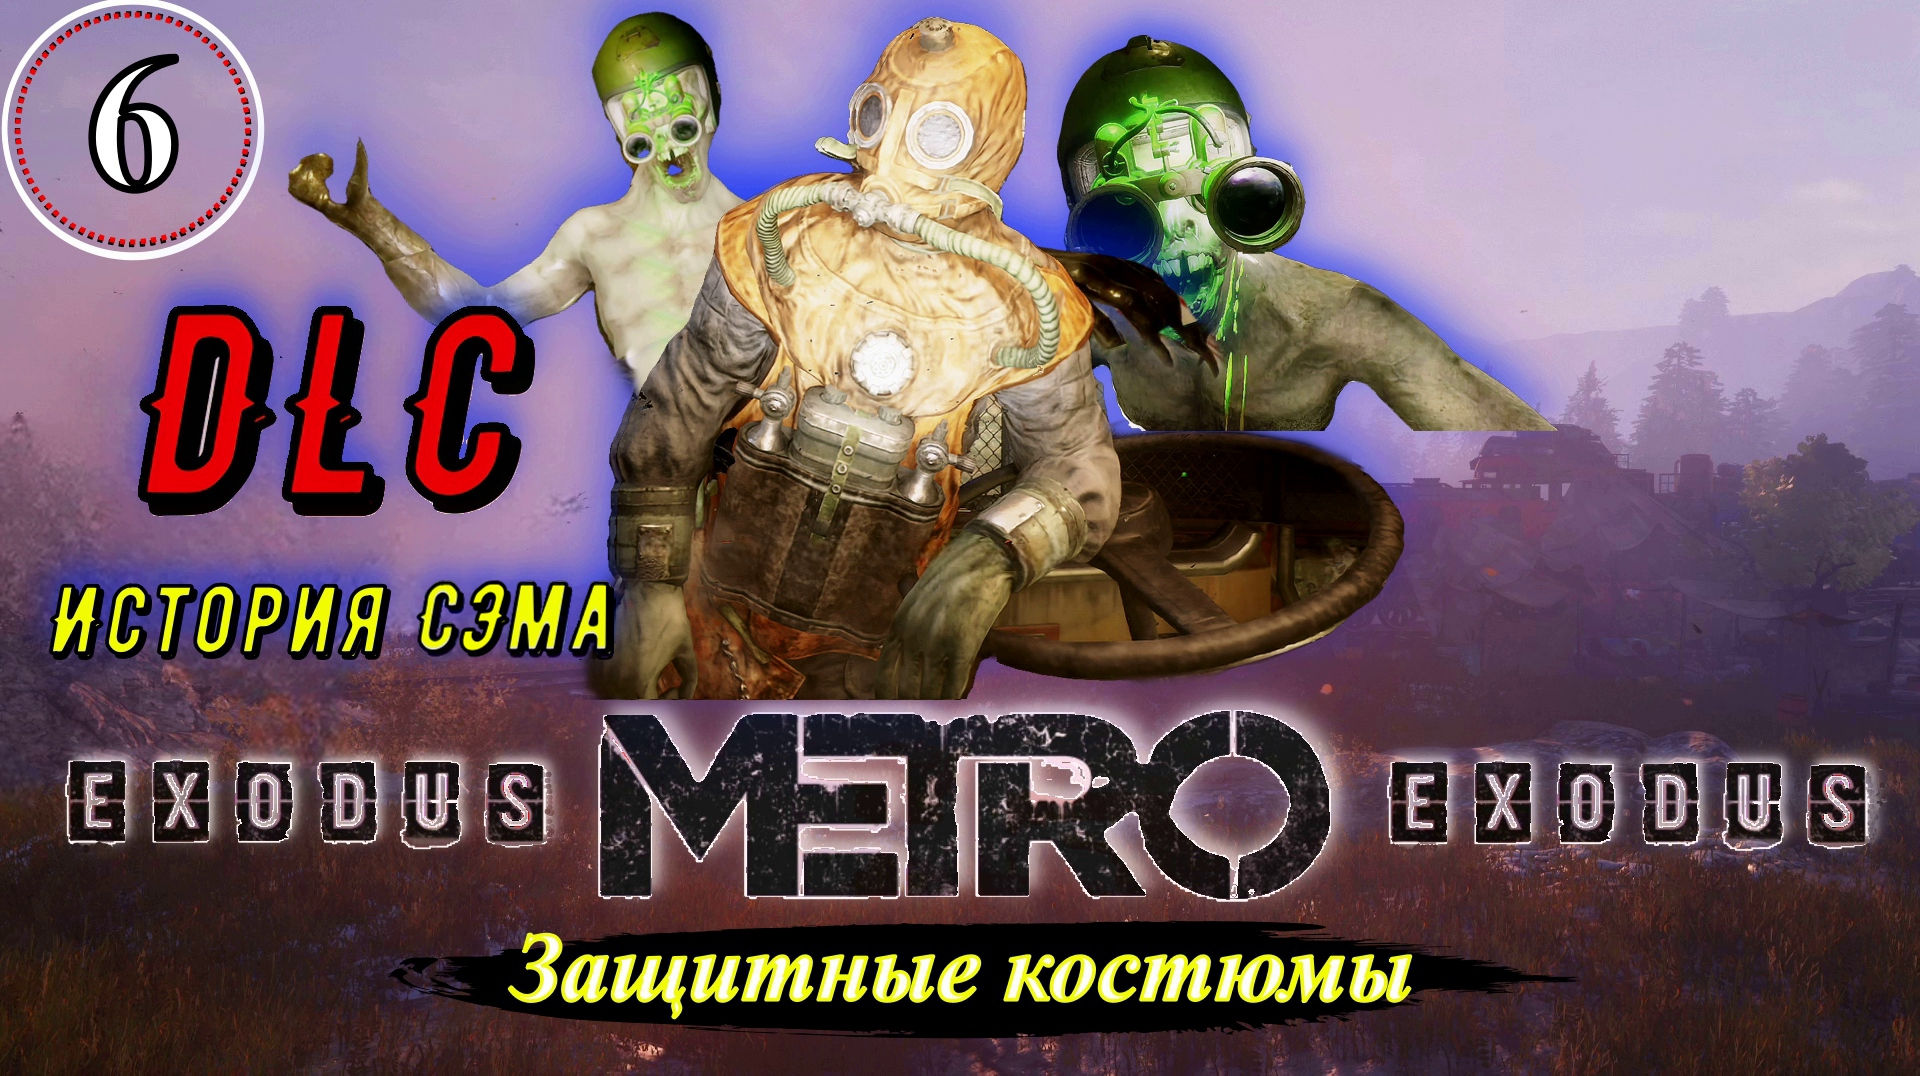 Metro Exodus История Сэма. Защитные костюмы - Прохождение. Часть 6.mp4